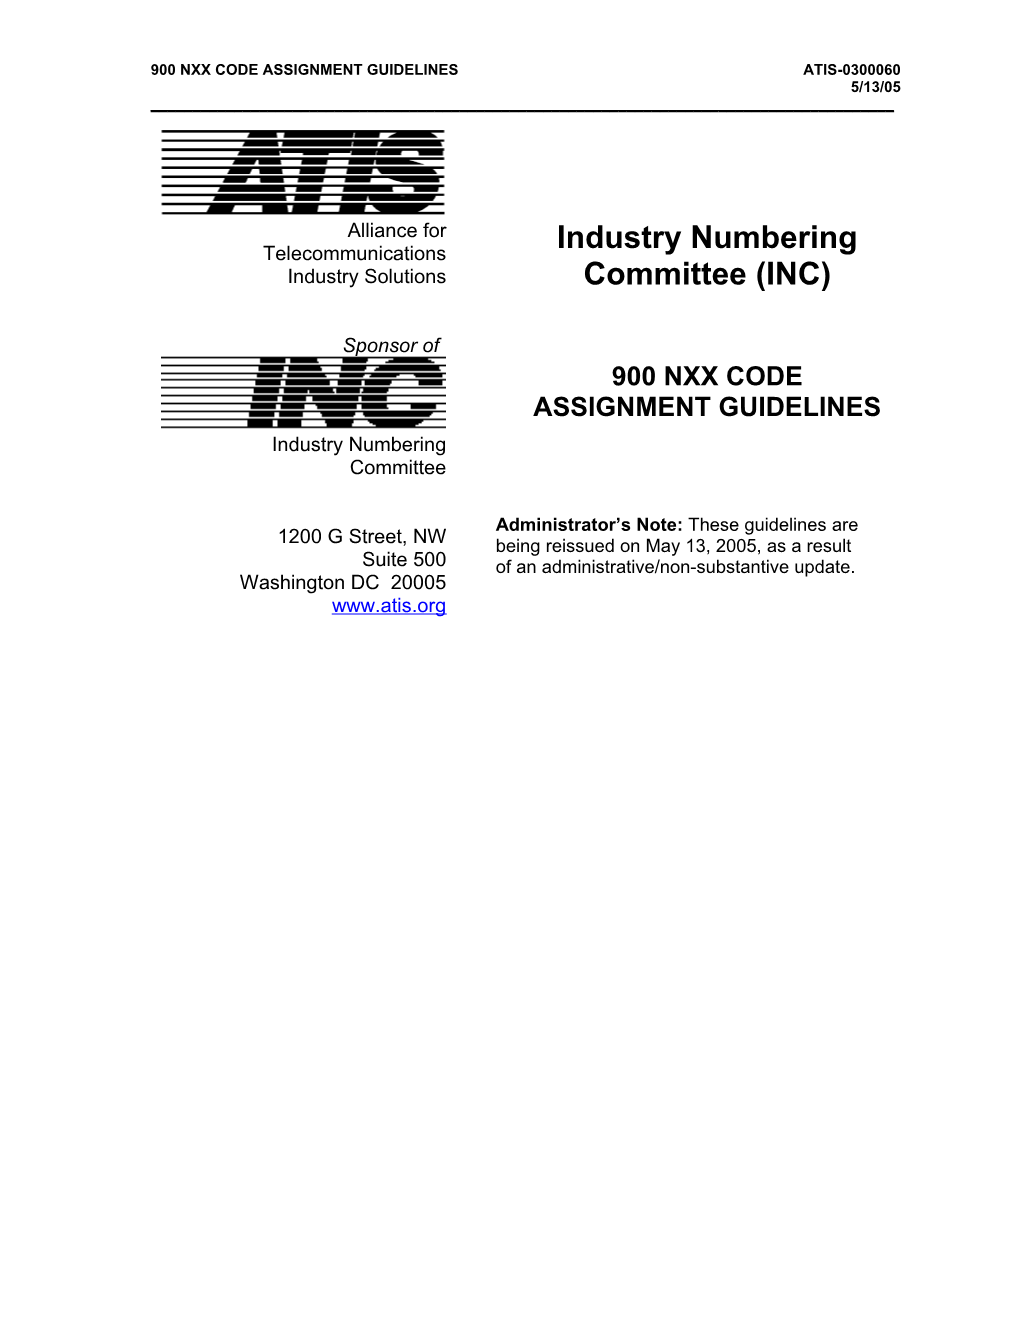 900 Nxx Code Assignment Guidelinesatis-0300060